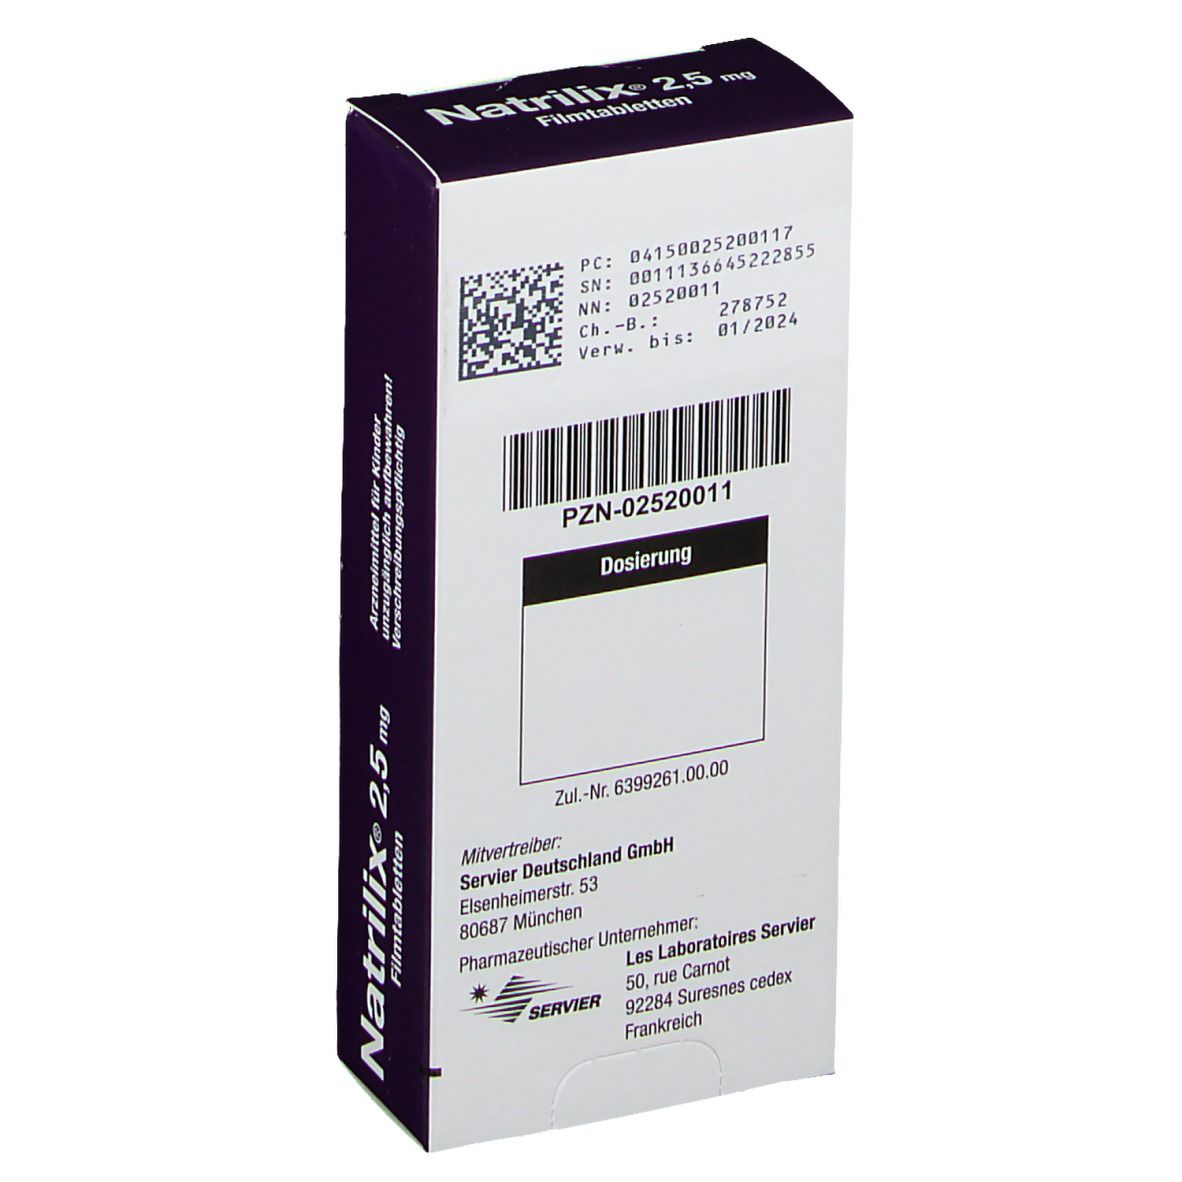 Natrilix® 2,5 mg